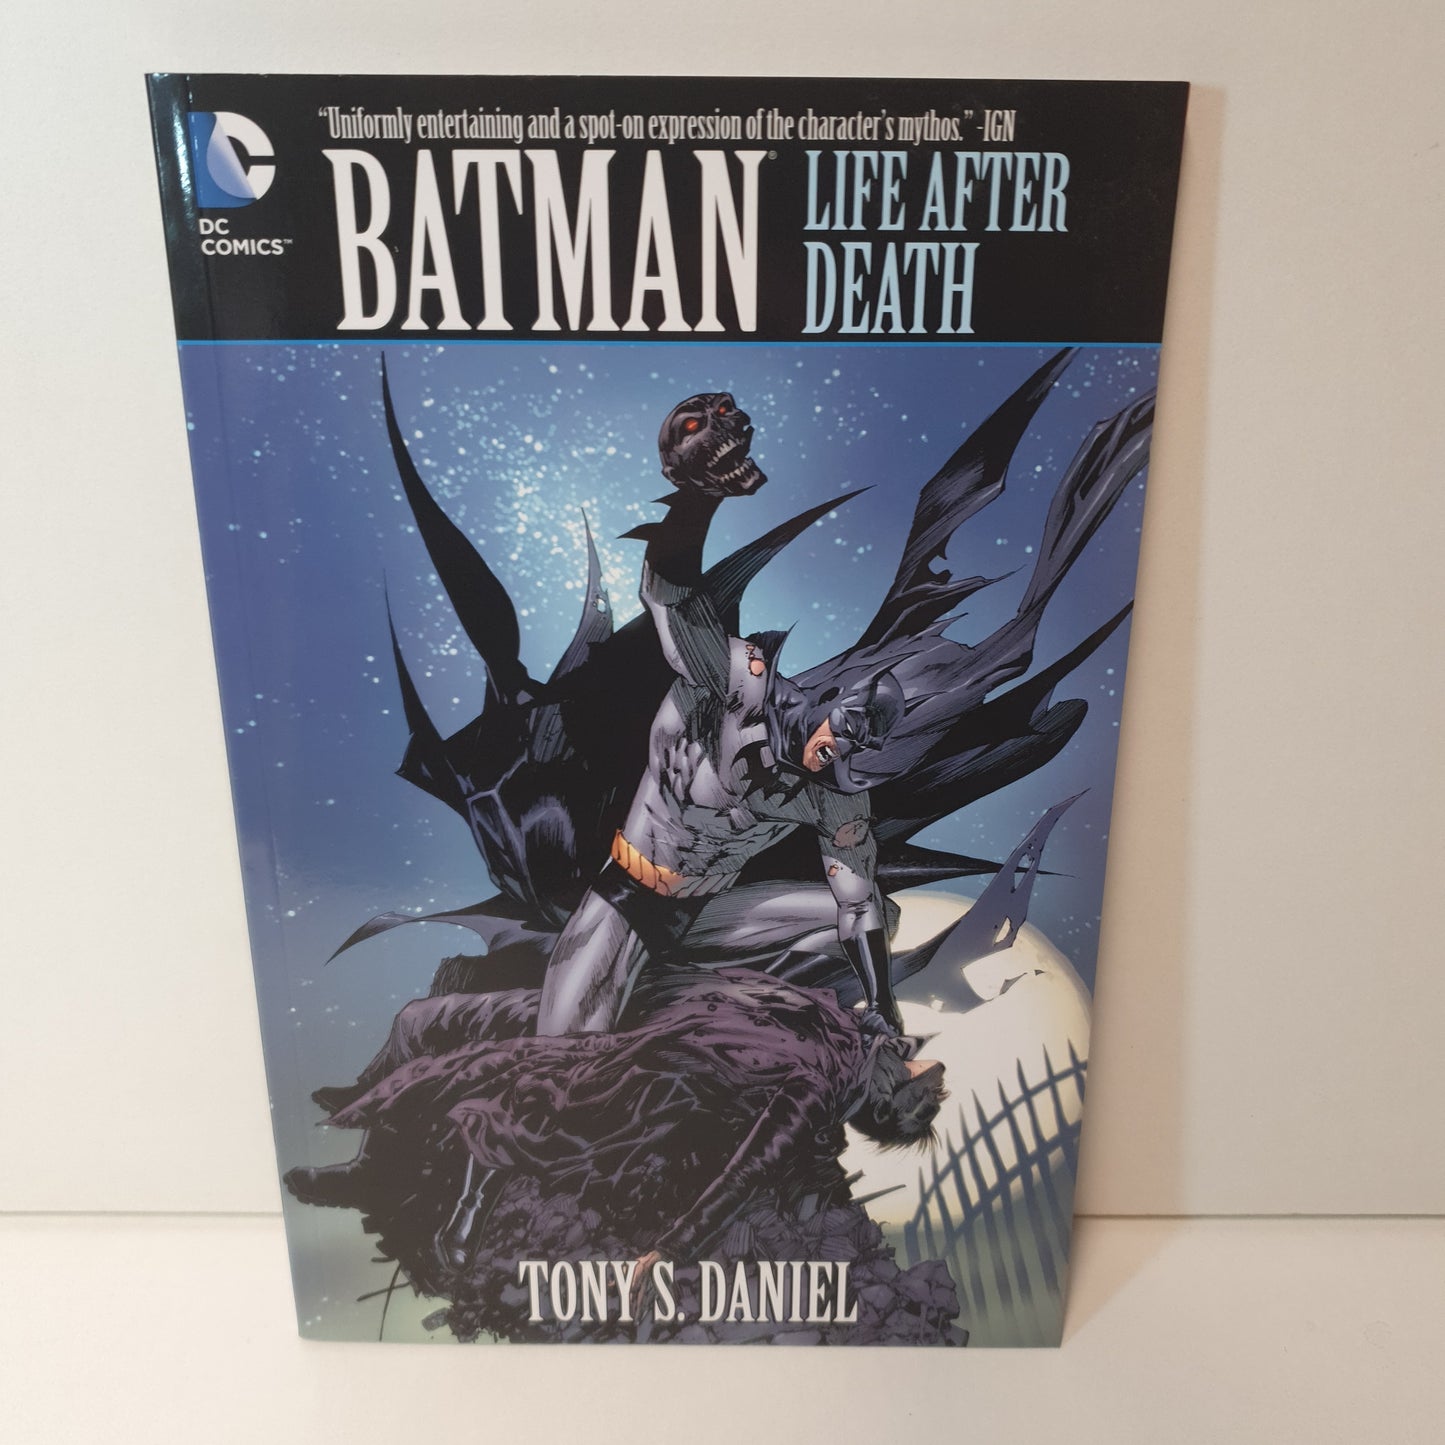 Batman: Life After Death by Tony S Daniel (2009)